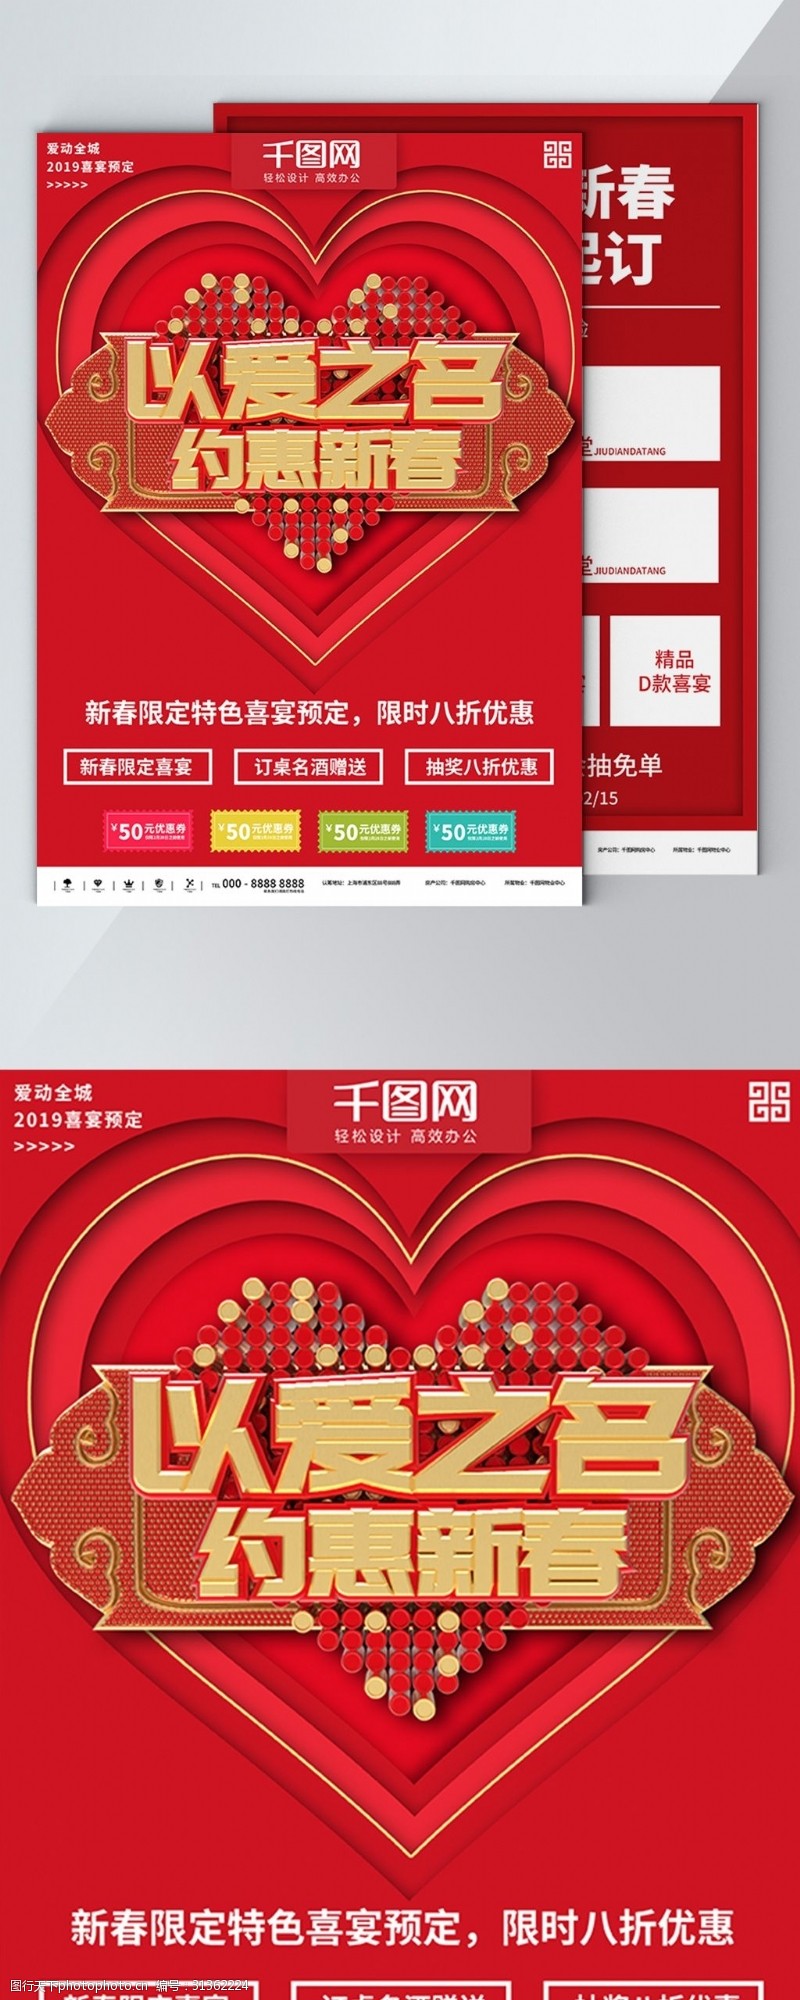 预约年饭红色以爱之名约惠新春喜宴预定商业宣传海报